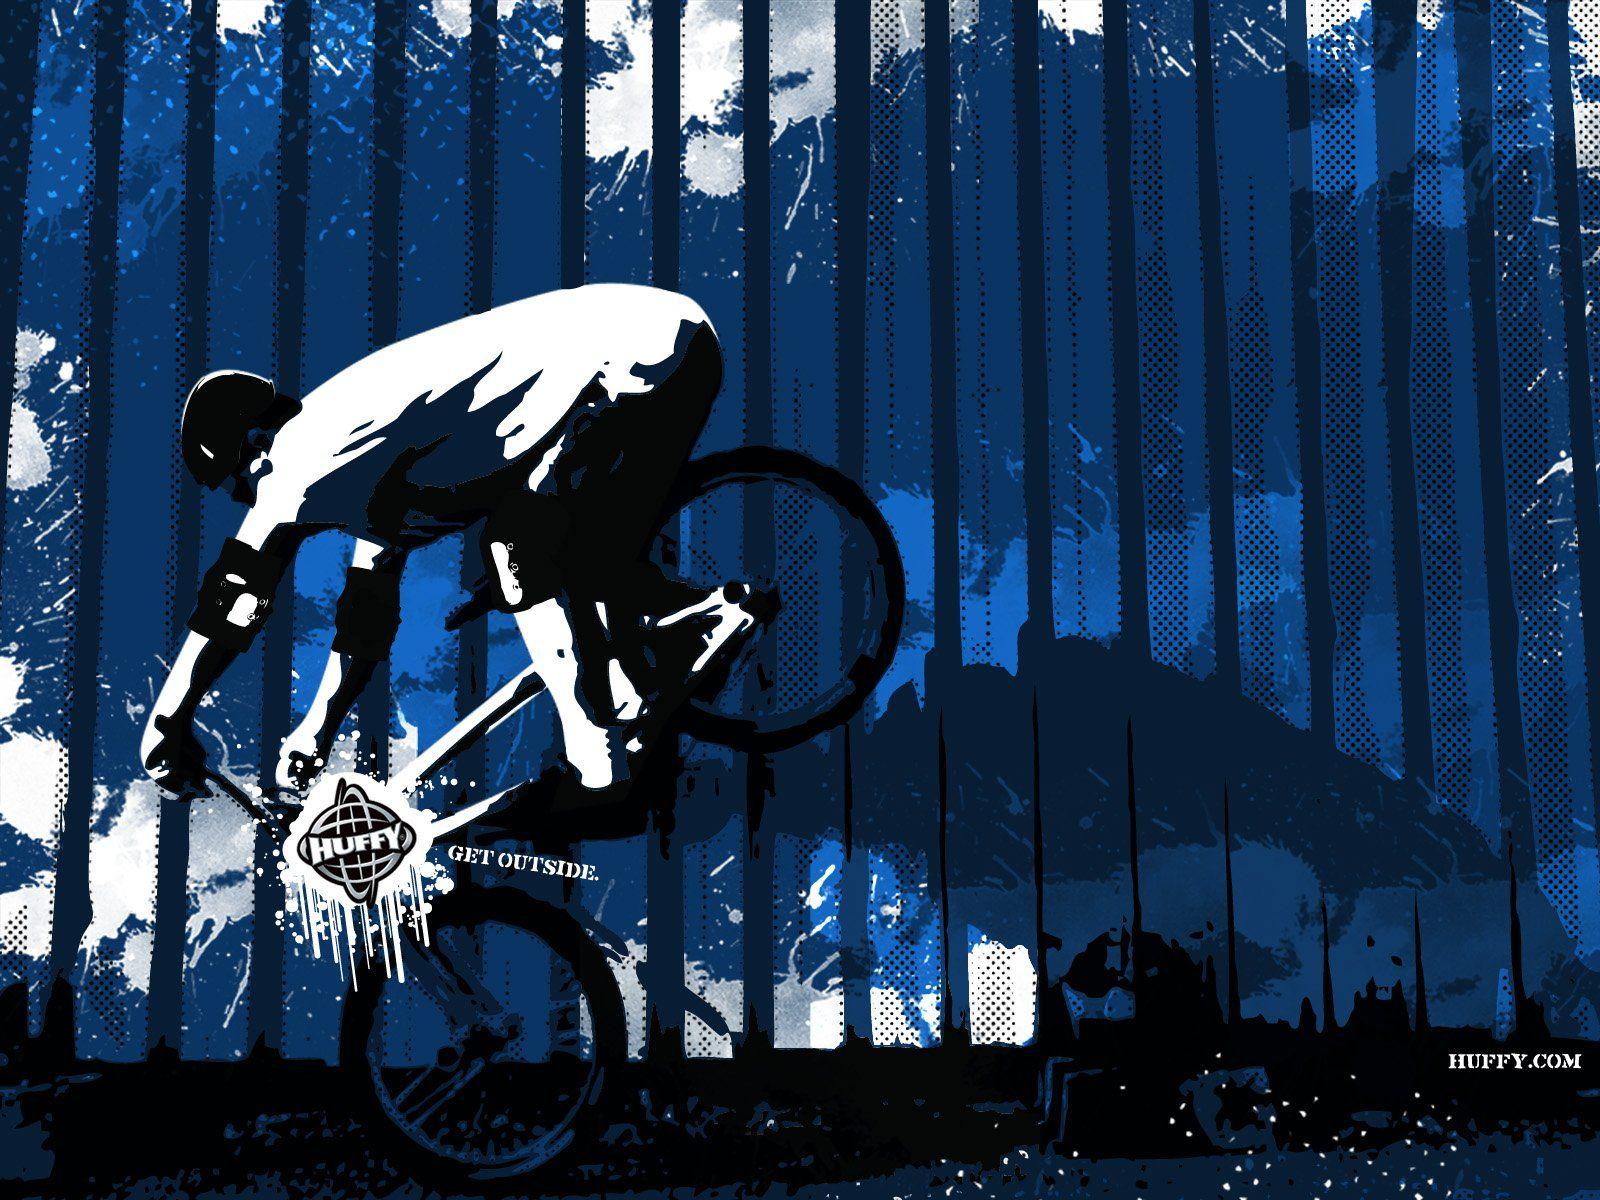 Awesome BMX Logo - BMX logo bike bicycle wallpaper | 1600x1200 | 463405 | WallpaperUP